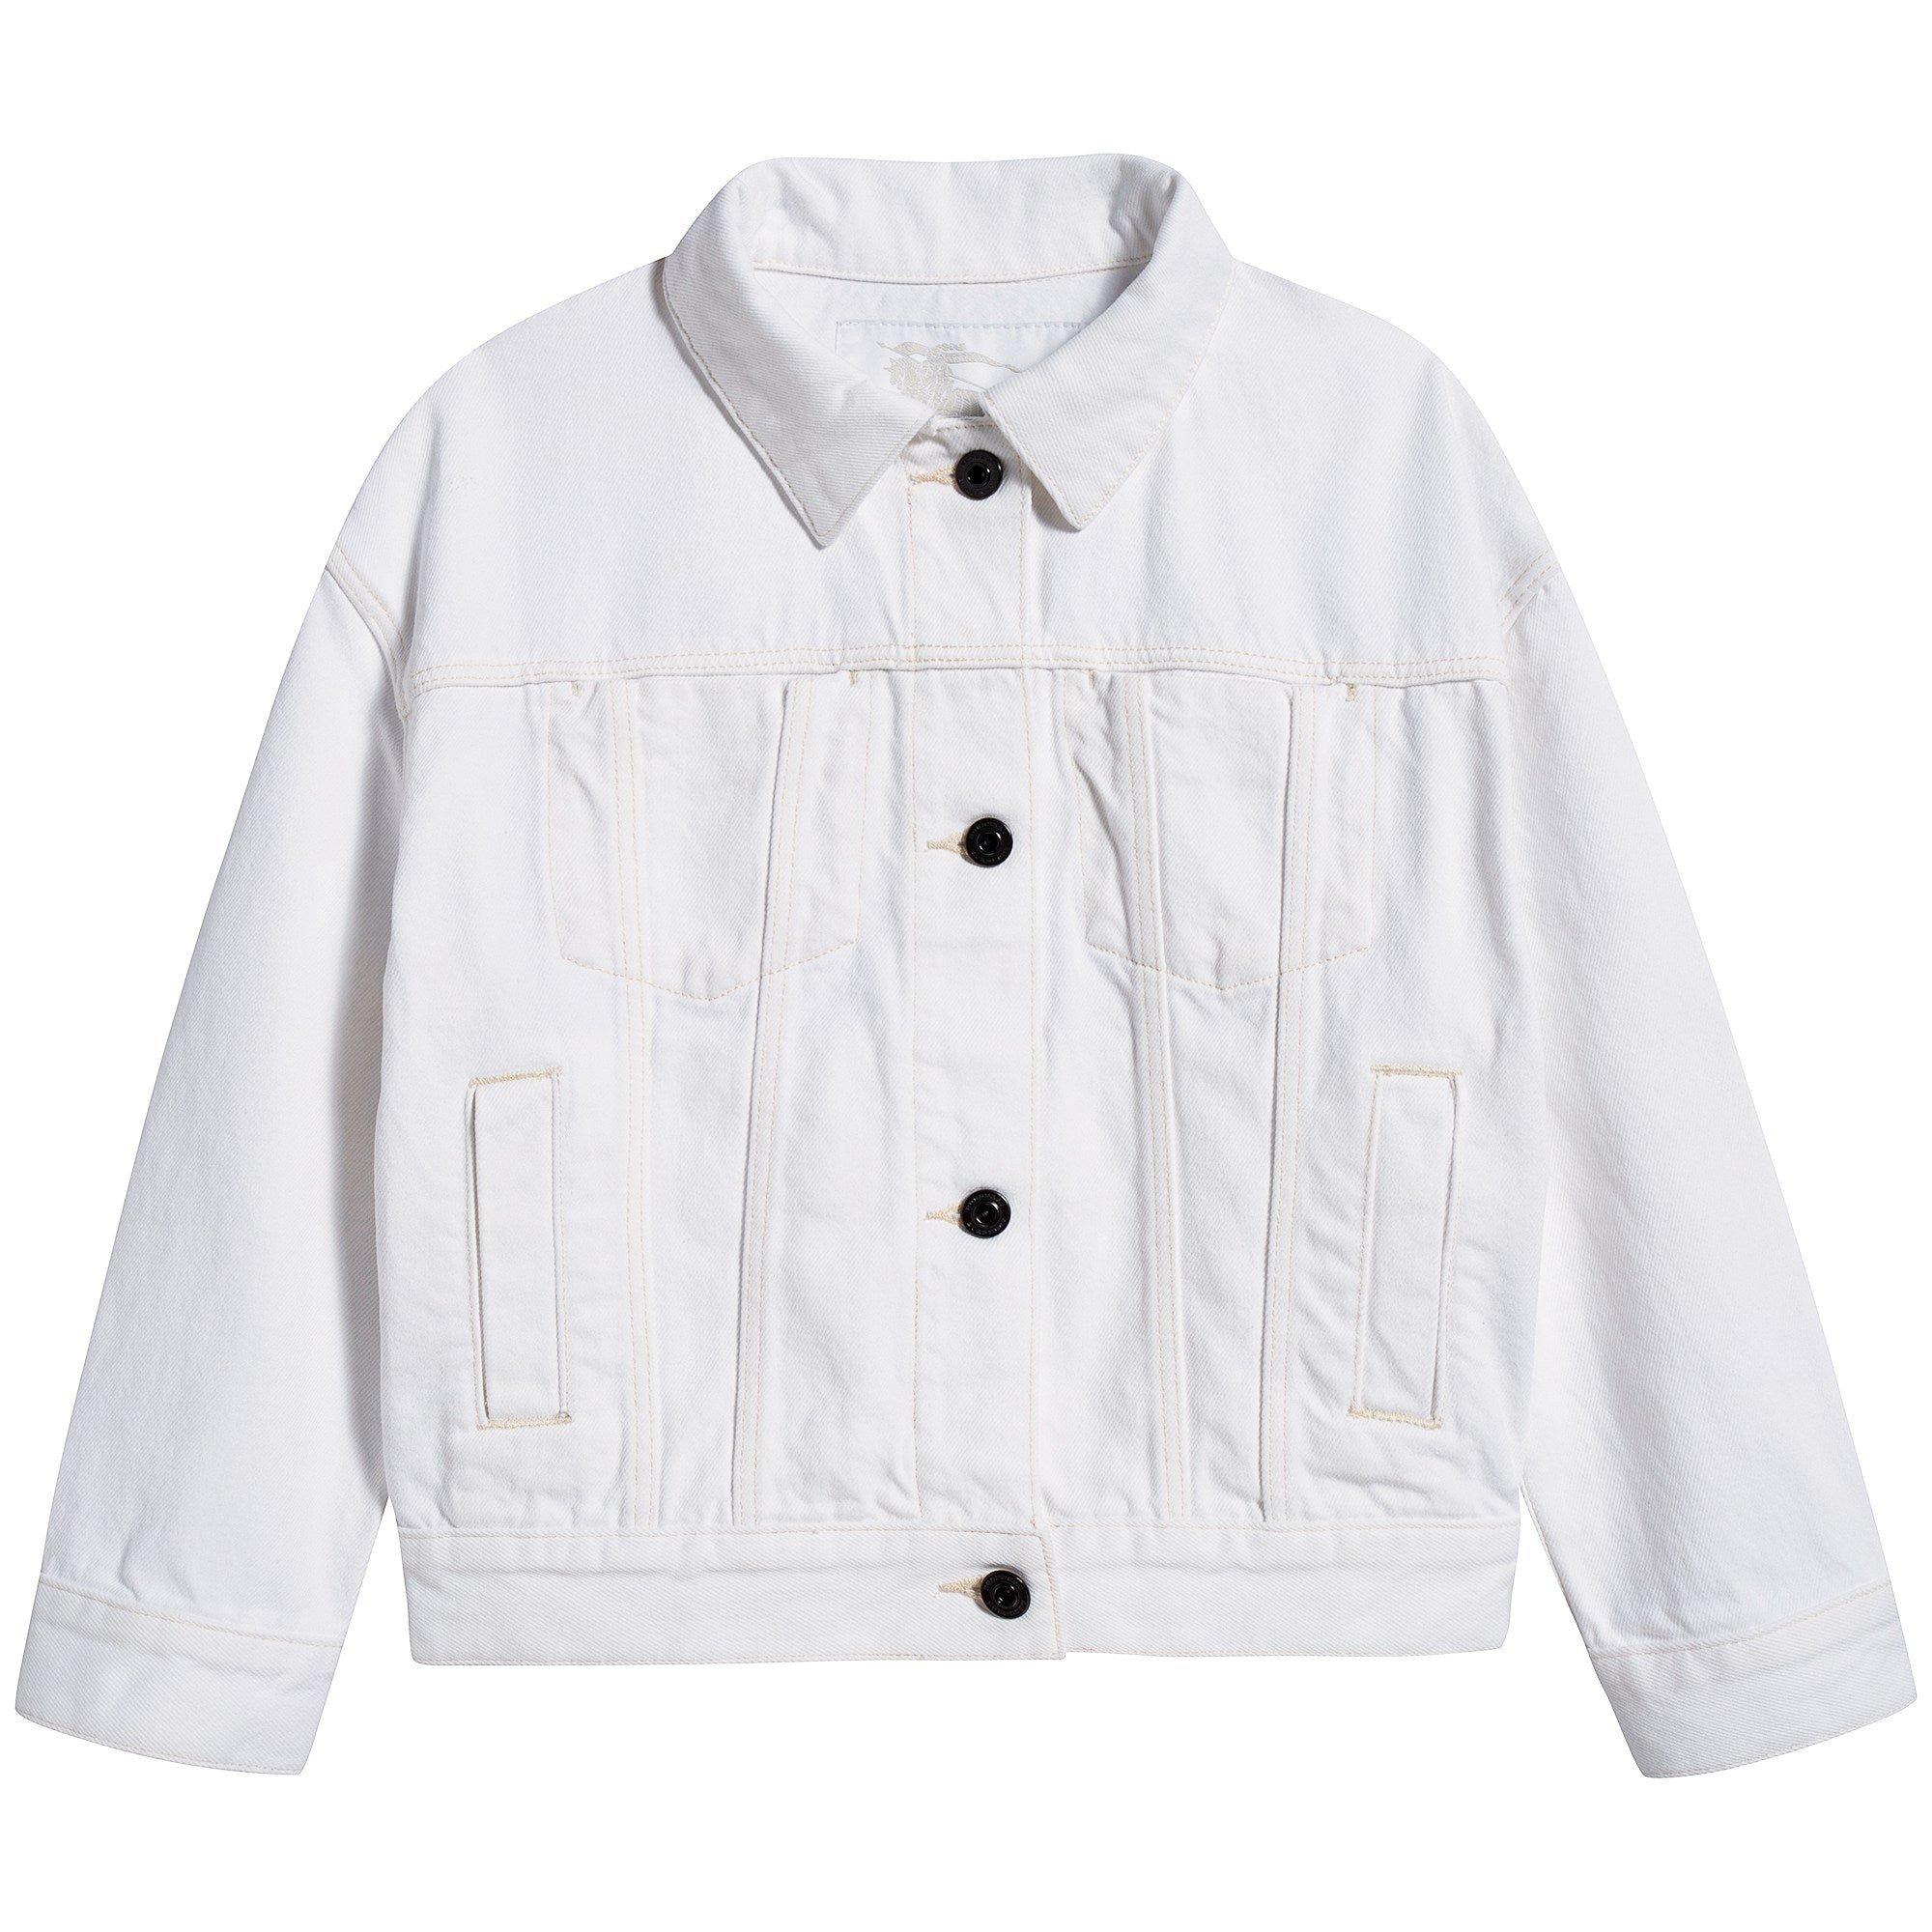 Girls Natural White Cotton Jacket